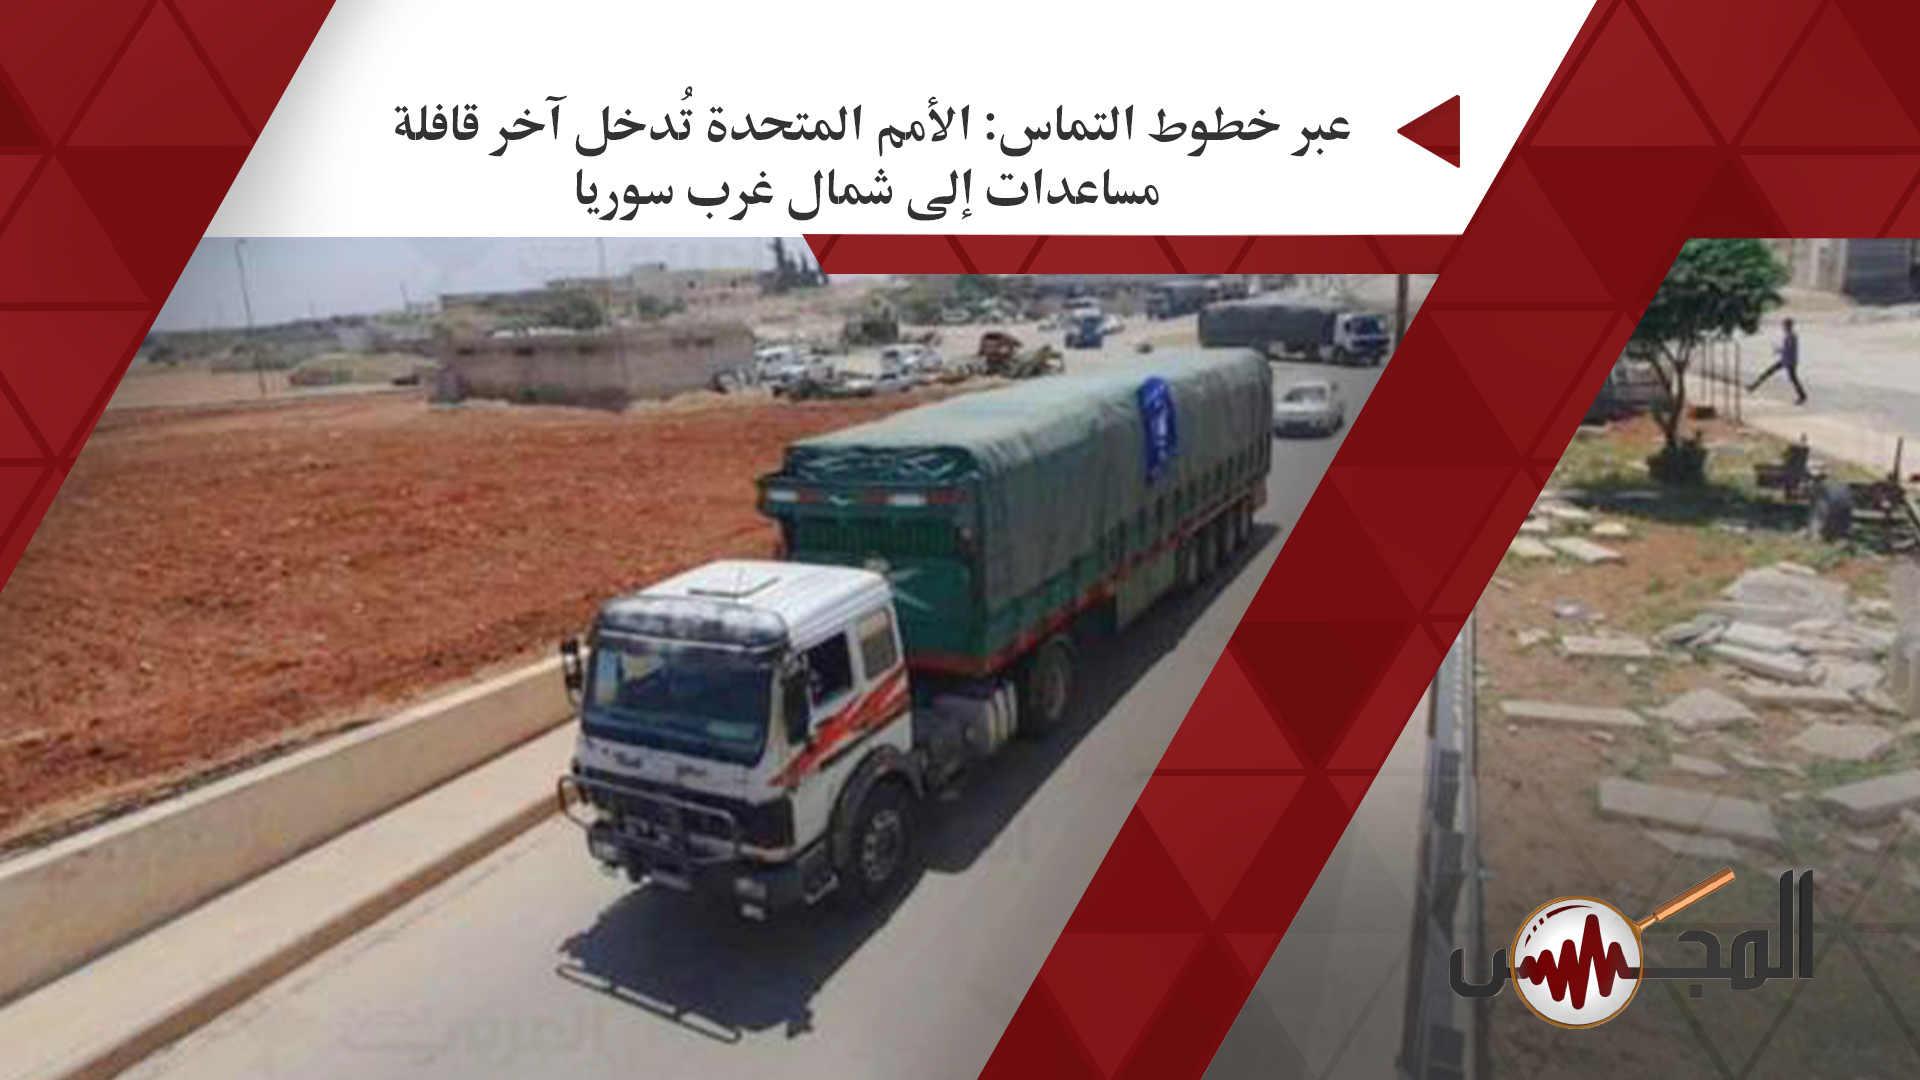  عبر خطوط التماس: الأمم المتحدة تُدخل آخر قافلة مساعدات إلى شمال غرب سوريا